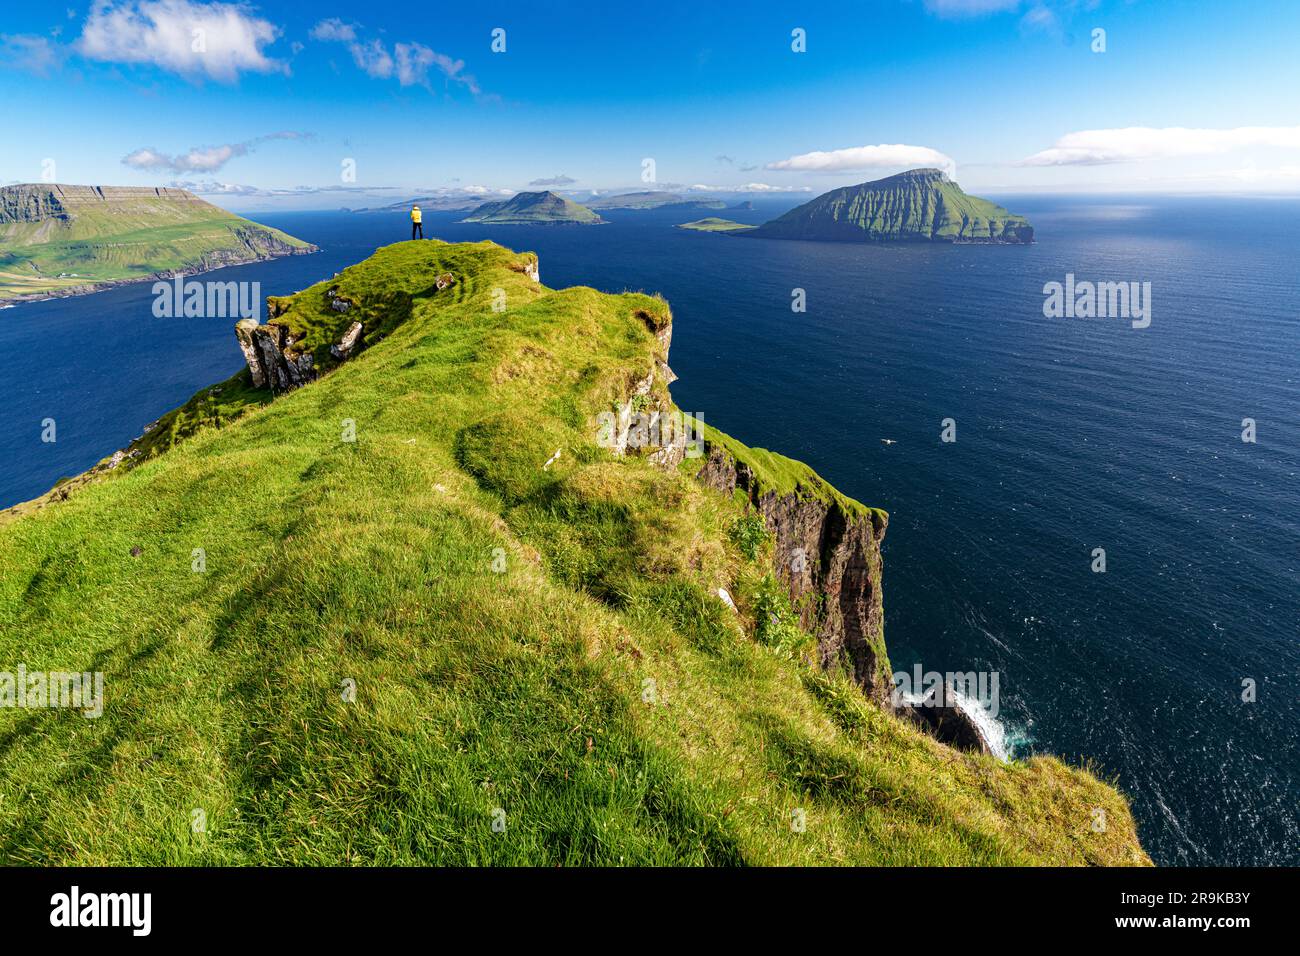 Wandern Sie auf den Klippen und bewundern Sie die Insel Koltur in der Mitte des Ozeans, Nordradalur, Streymoy Island, Färöer Inseln Stockfoto